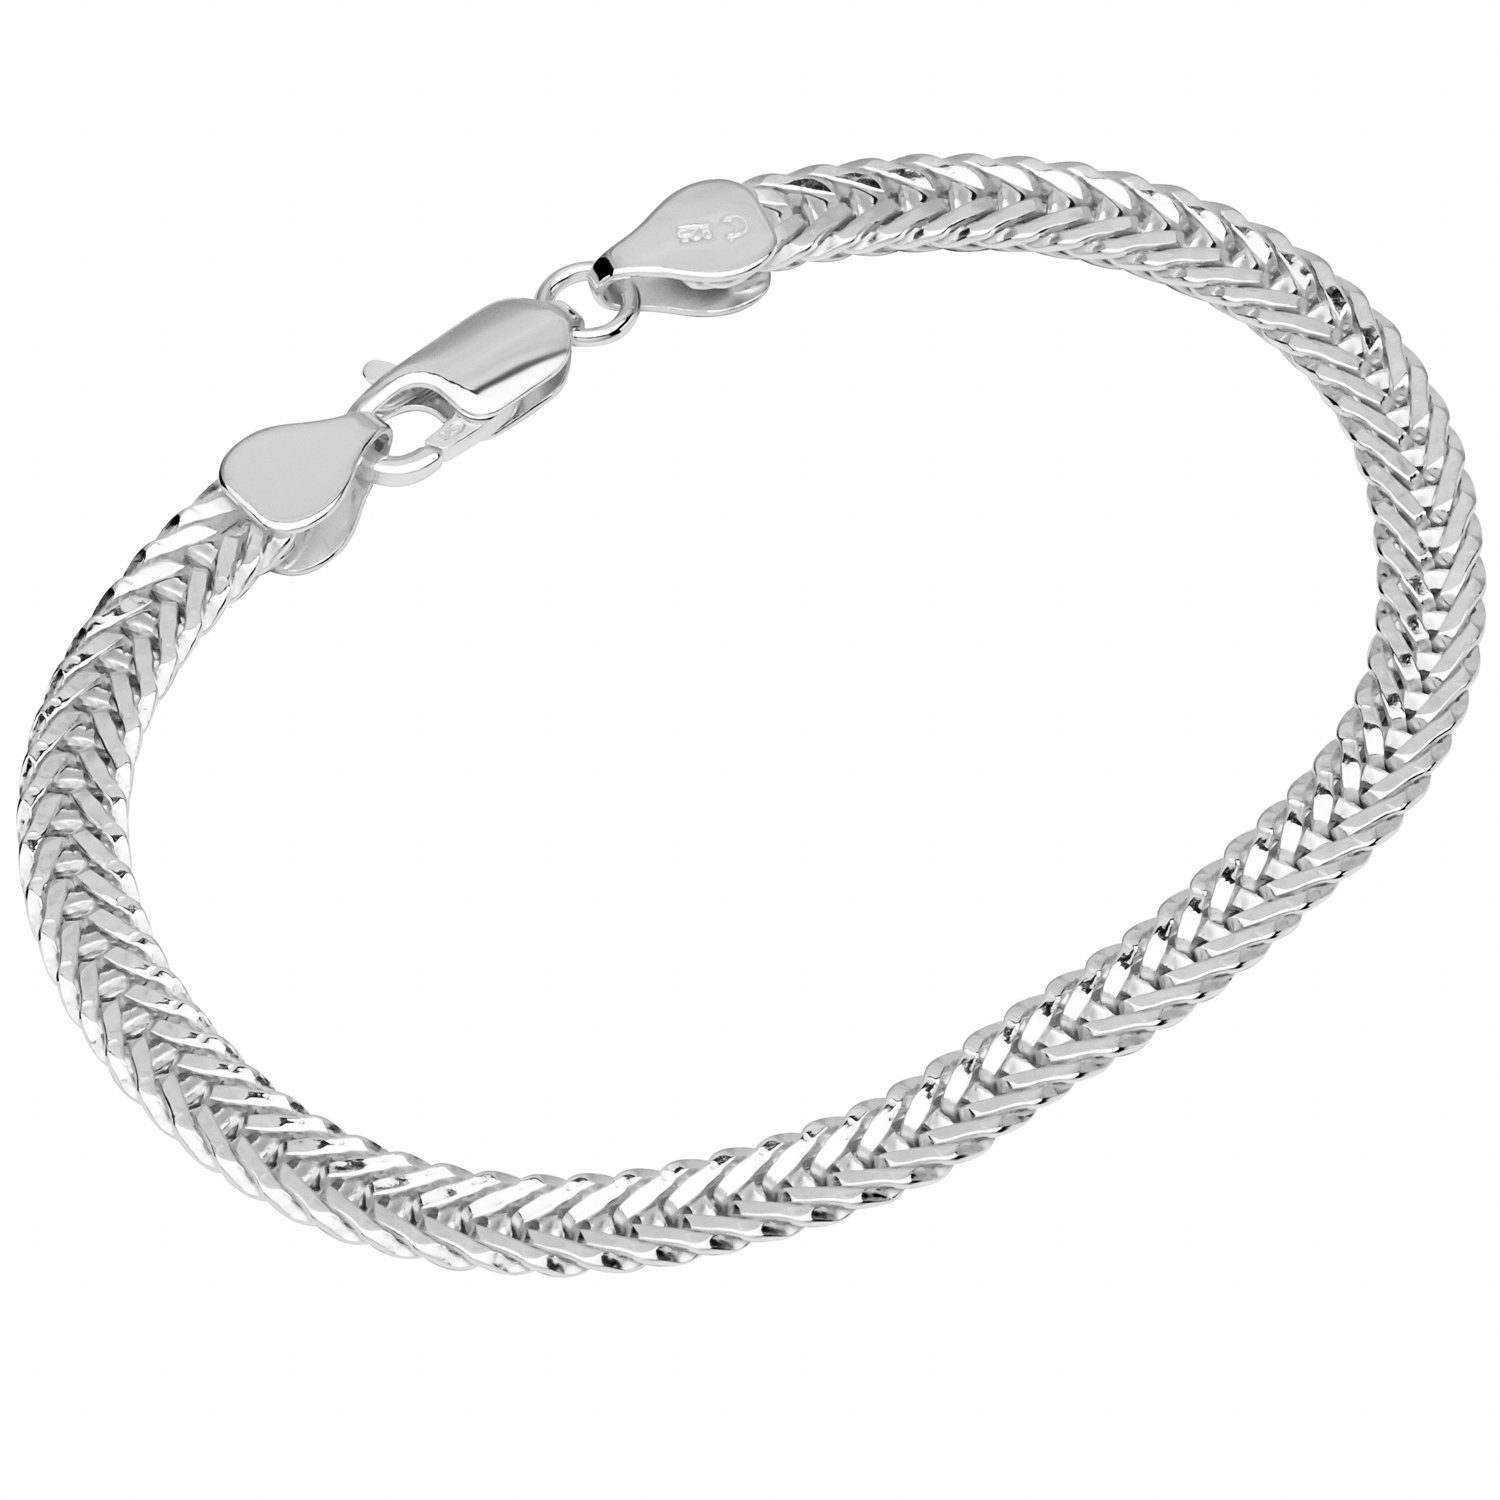 NKlaus Silberarmband Armband 925 Sterling Silber 19cm Fuchsschwanzkette | Silberarmbänder